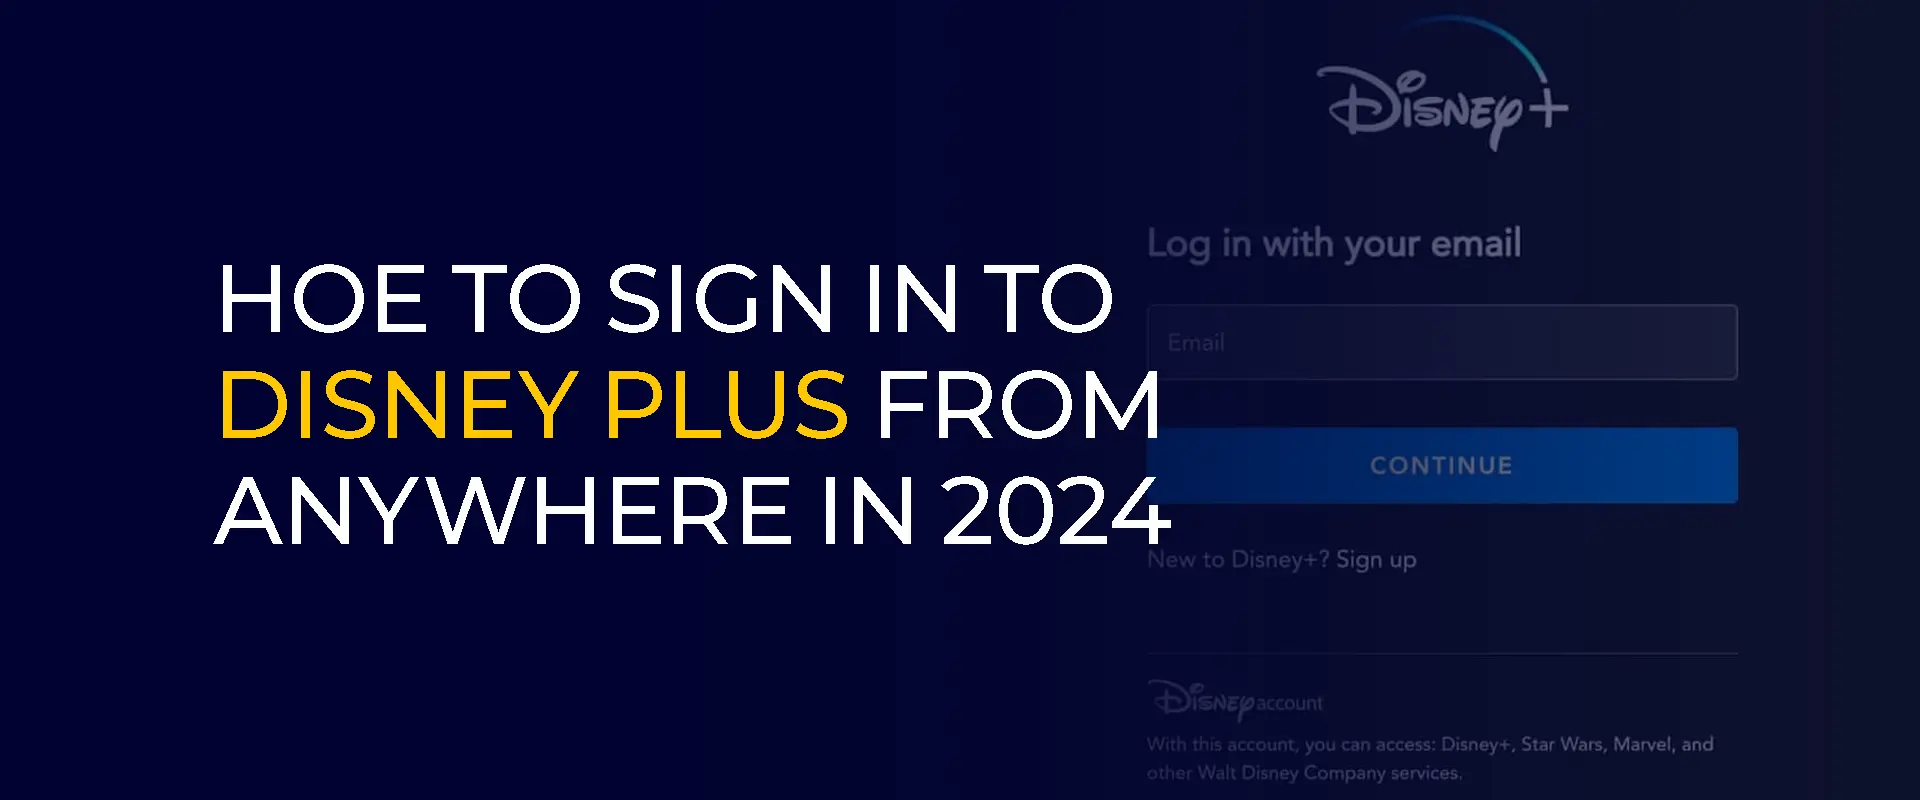 So melden Sie sich im Jahr 2024 von überall aus bei Disney Plus an